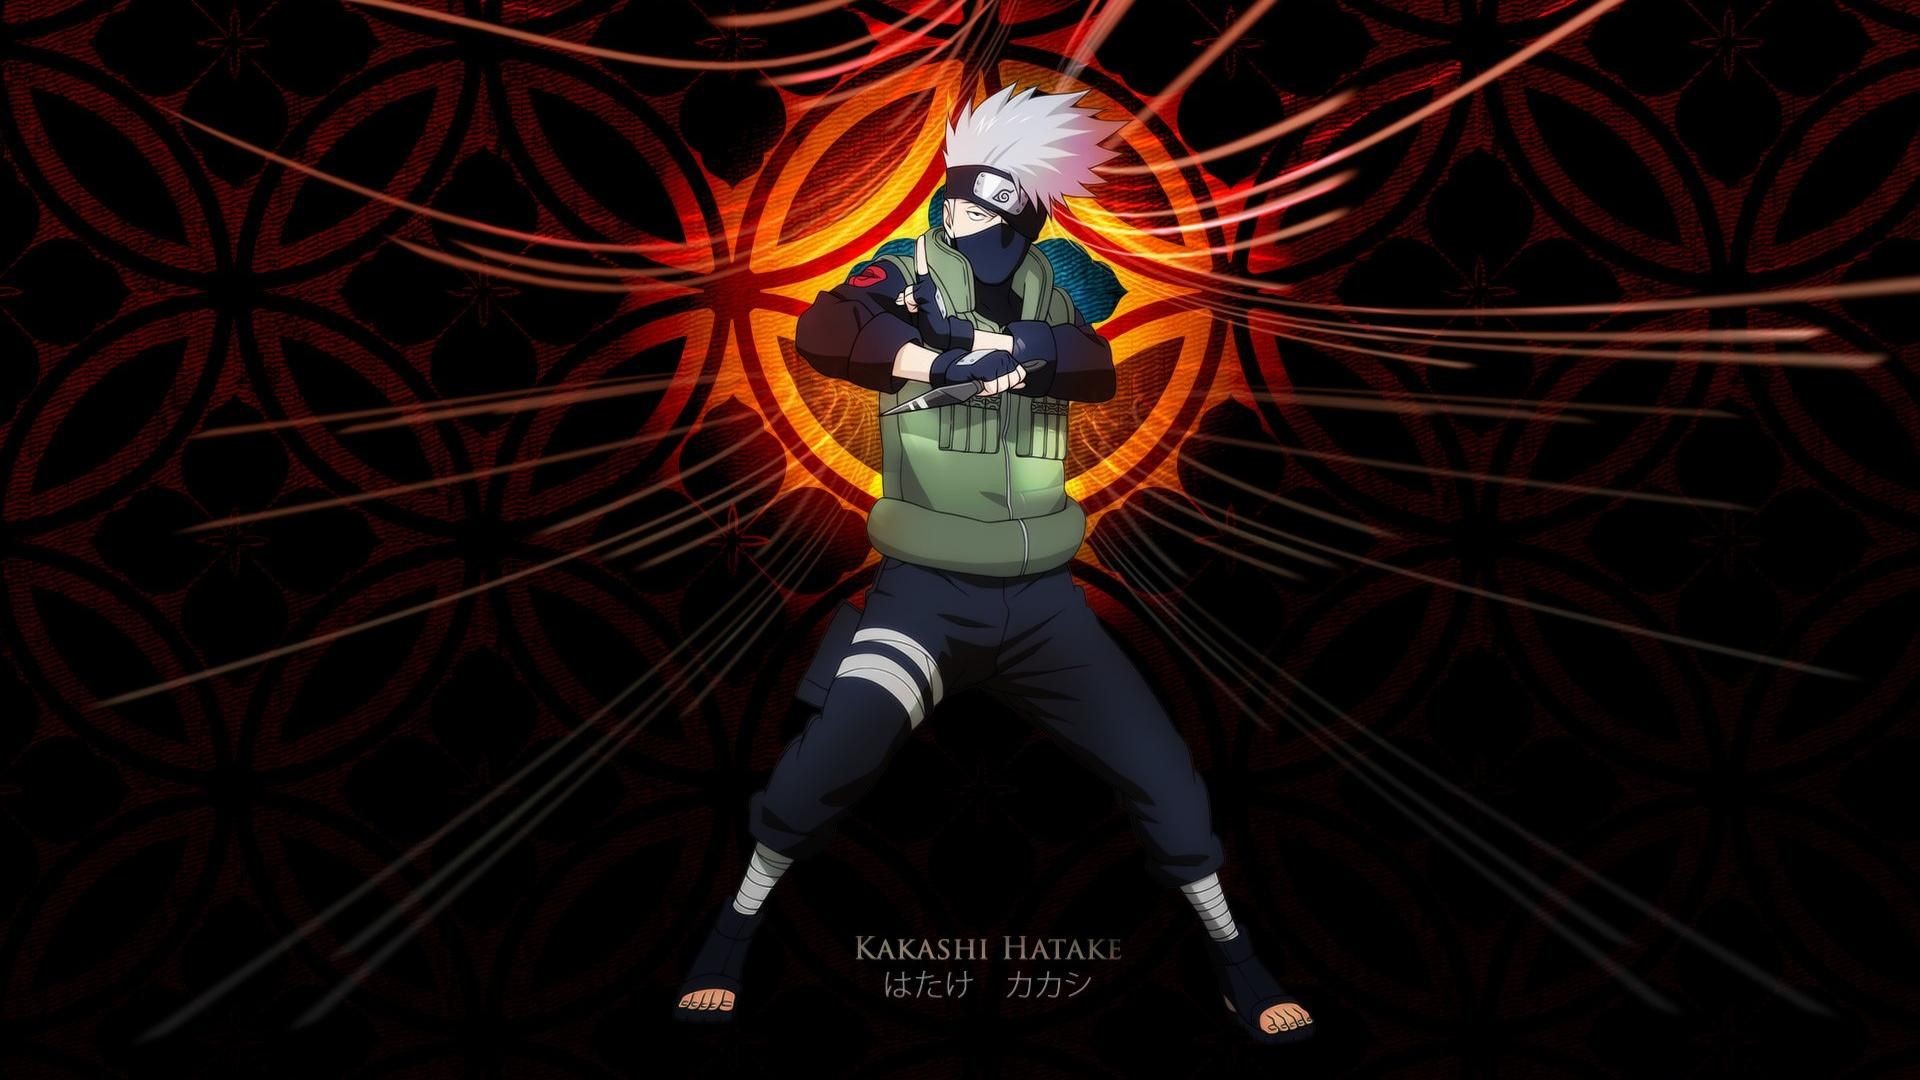 Naruto là một trong những bộ truyện tranh được ưa thích nhất và đang tại vị. Nếu bạn muốn tìm kiếm một bộ sưu tập những hình nền Naruto Full HD đẹp mắt, tuyệt vời nhất, thì đặt ngay bản Full HD nhé.